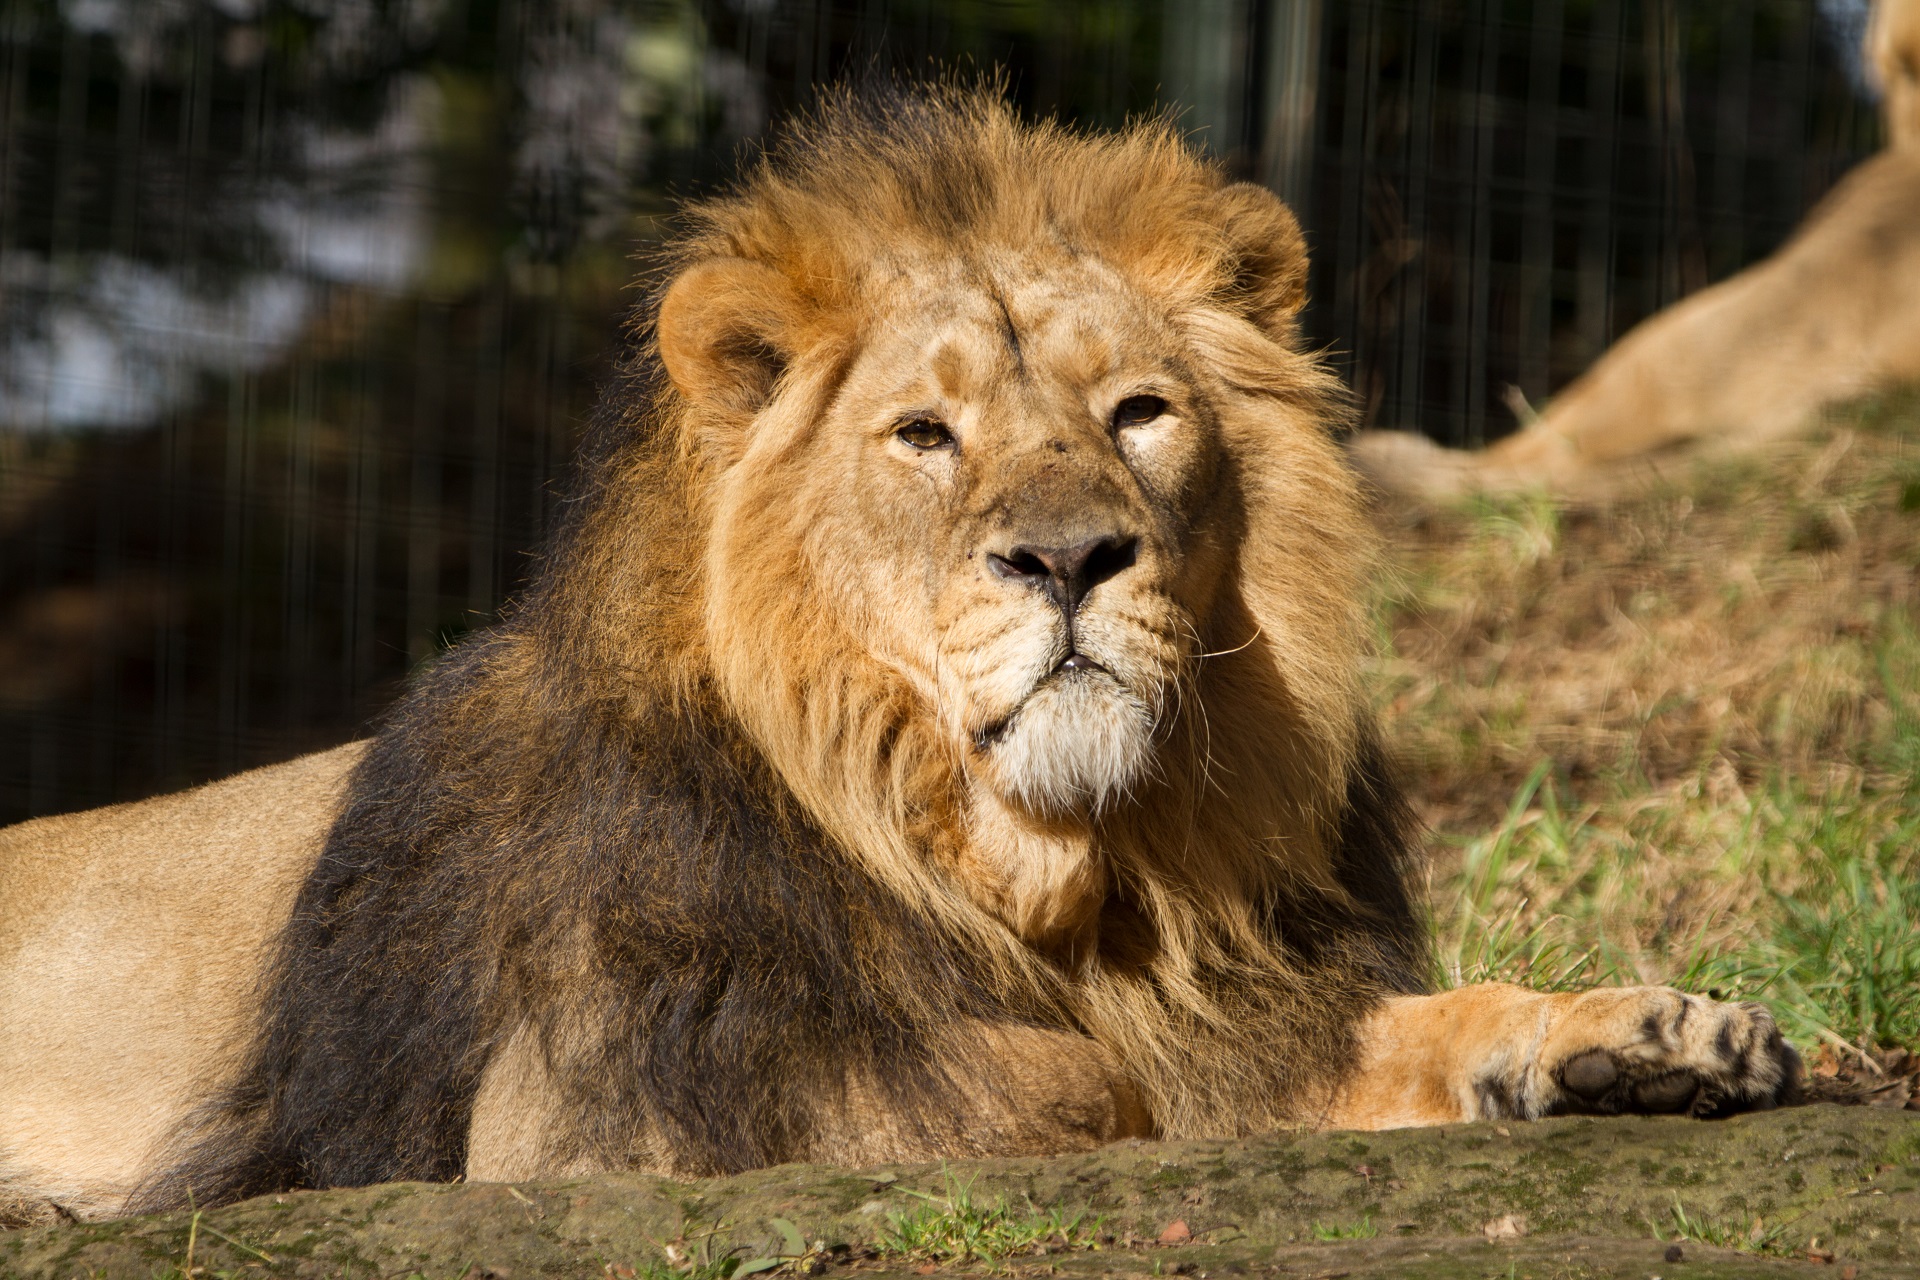 Asiatic lion male Jayendra looking at camera

IMAGE: Sian Addison 2018